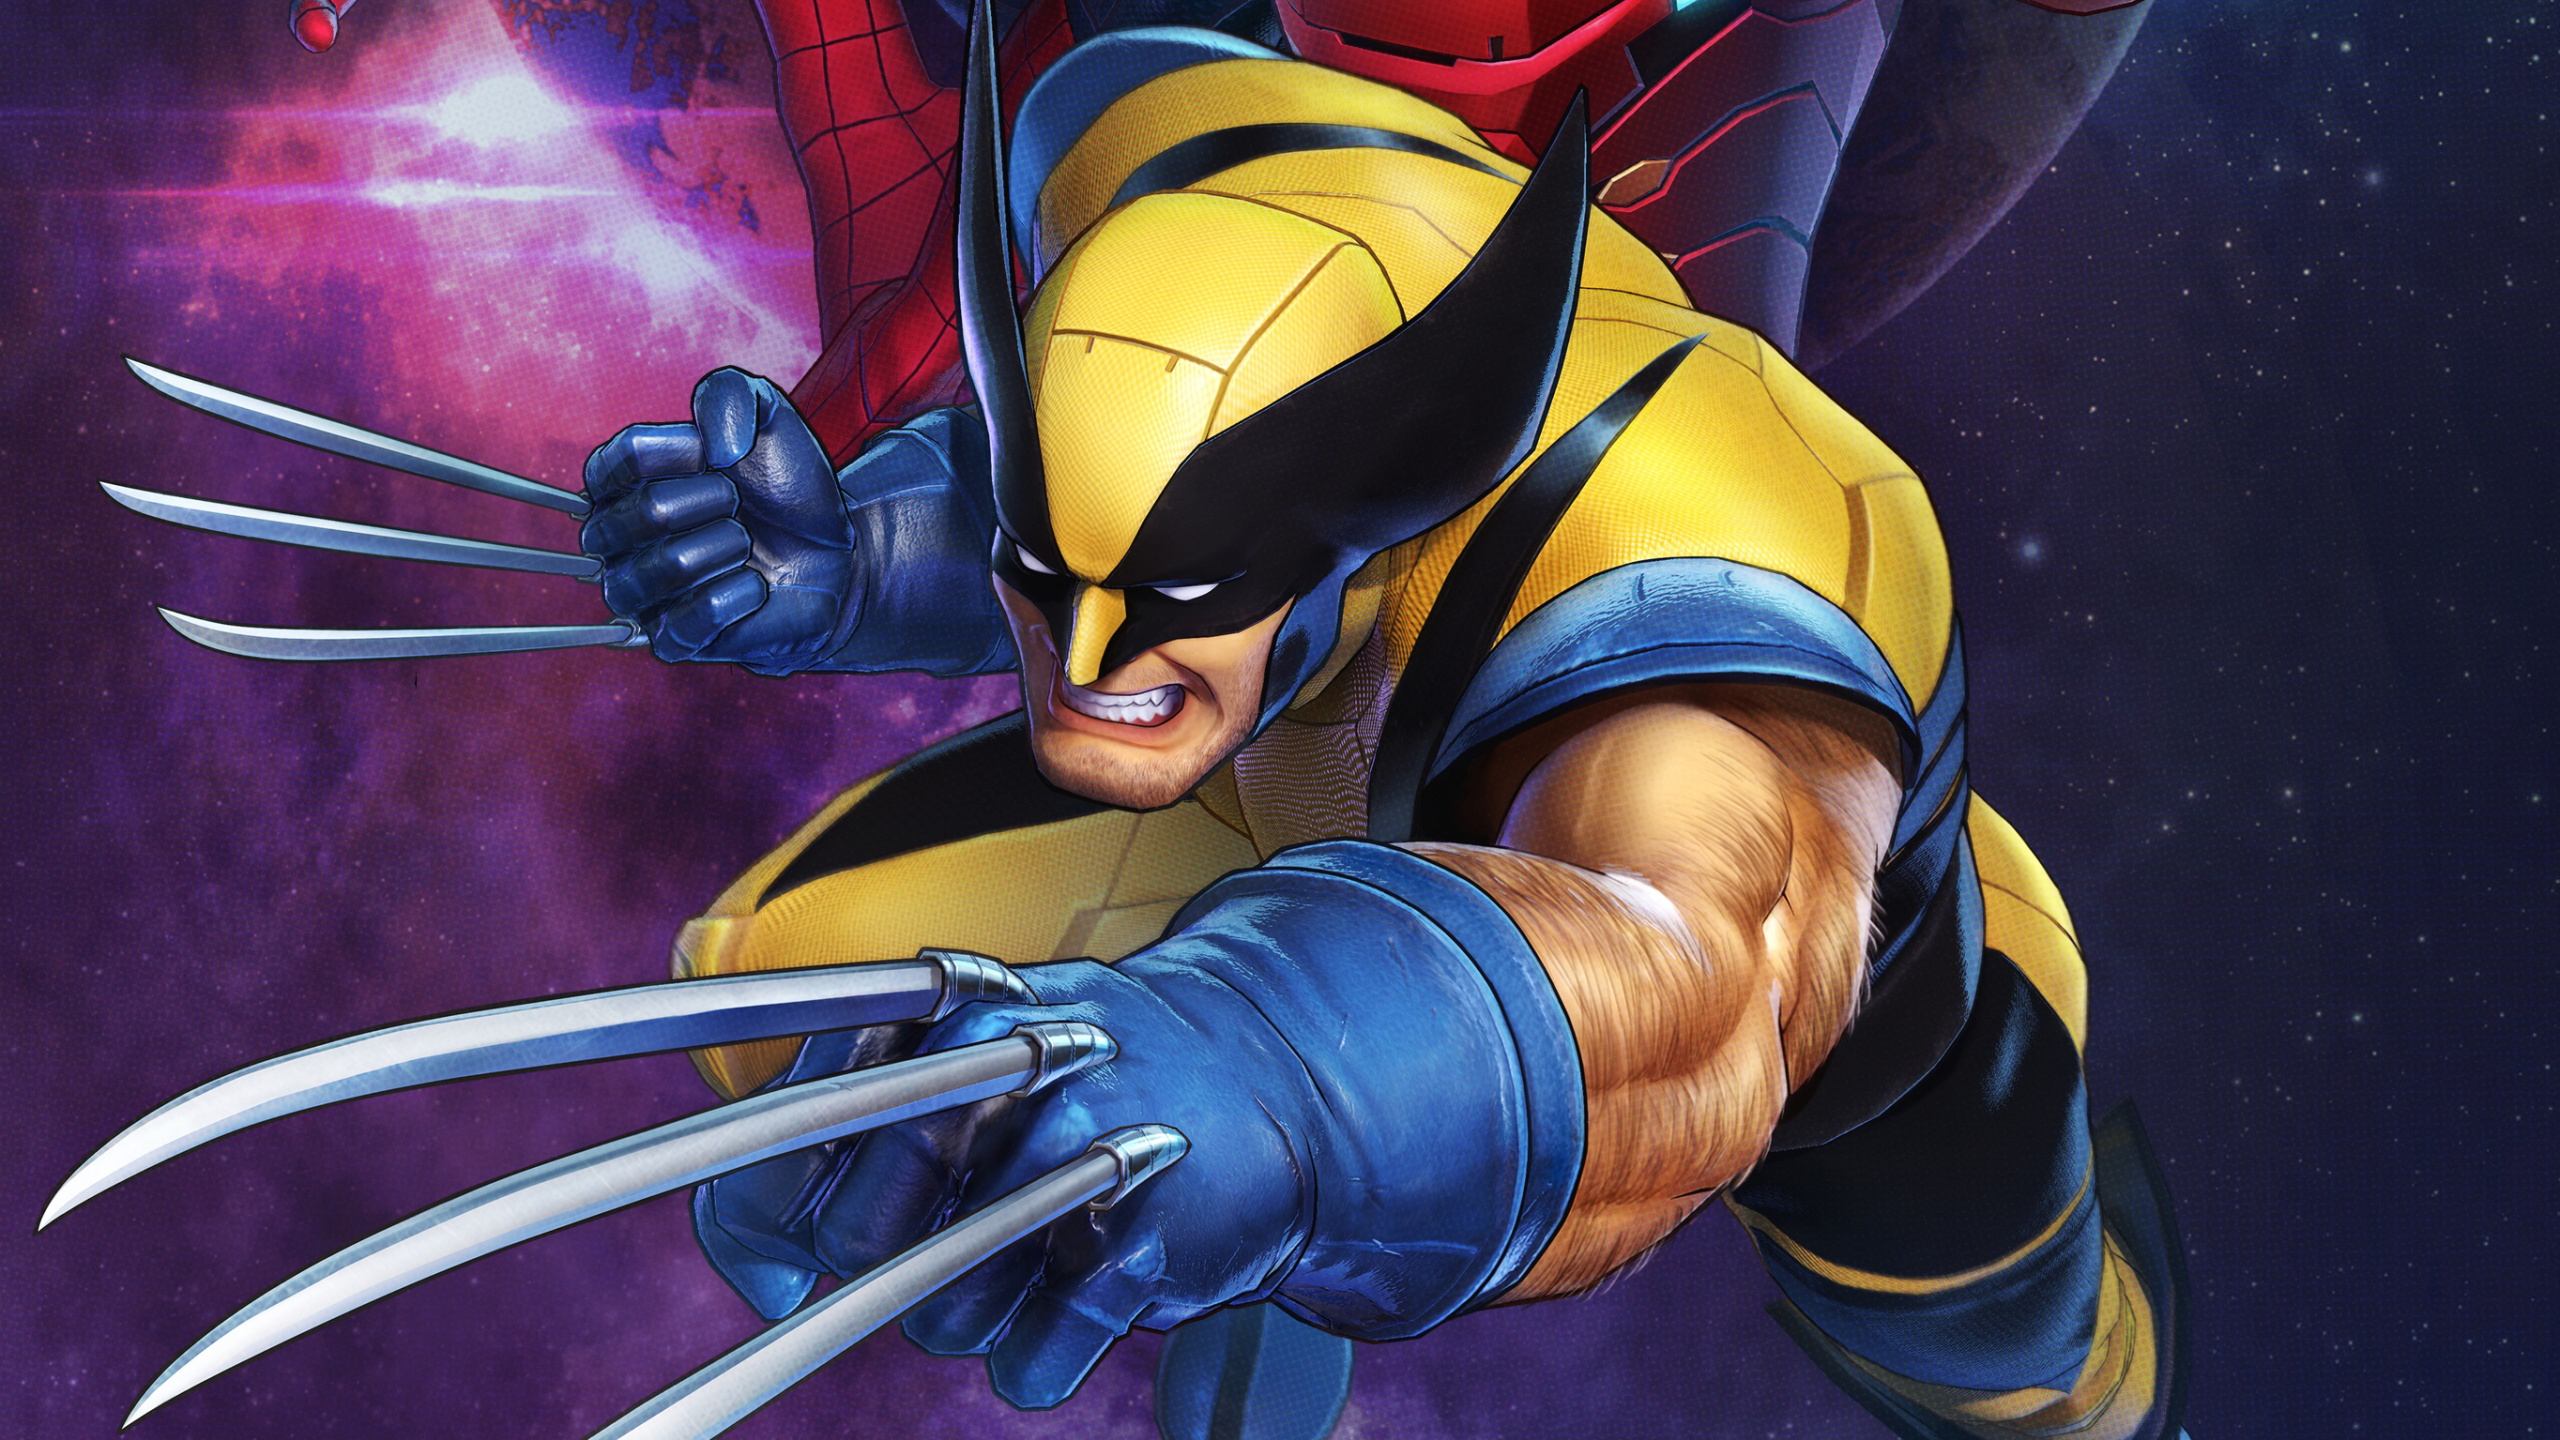 Marvel, Superhéroe, Wolverine, Protagonista, la Ficción. Wallpaper in 2560x1440 Resolution